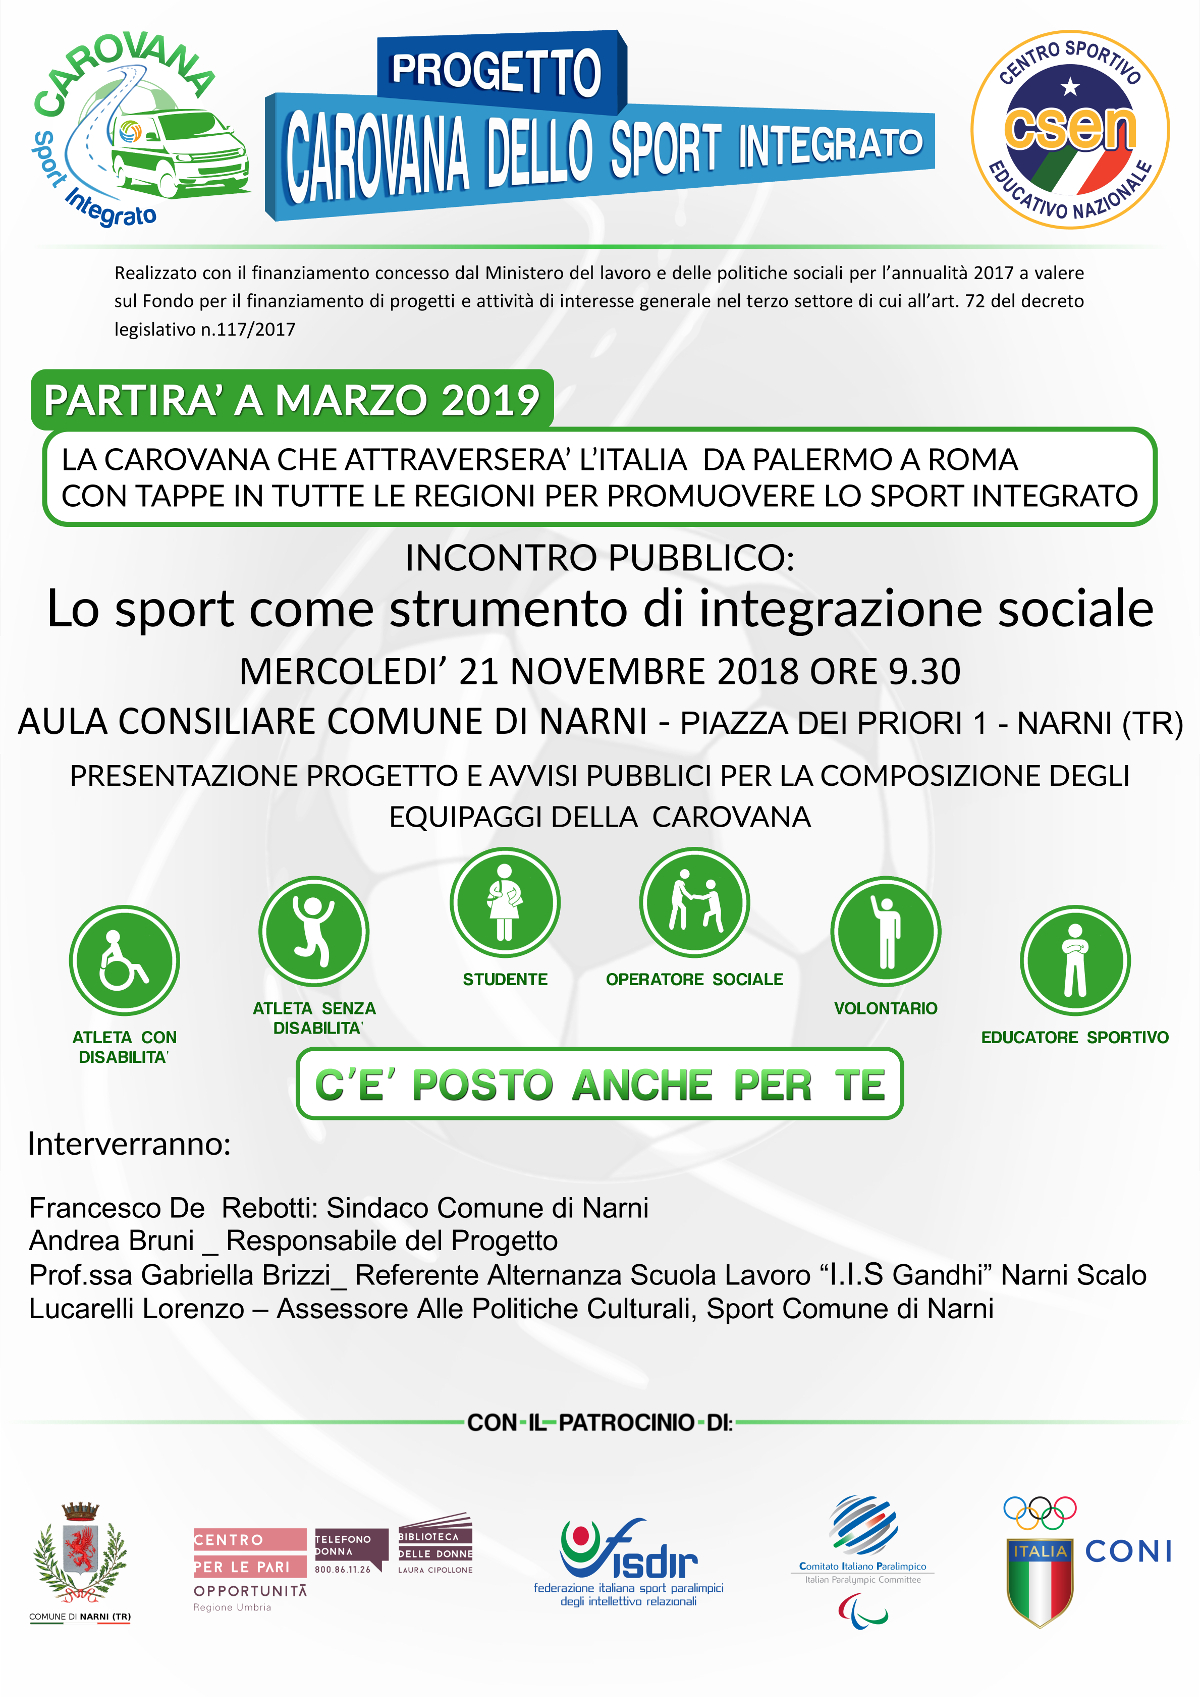 Il CPO aderisce al Progetto 'Carovana dello Sport Integrato' - Mercoledì 21 Novembre, a Narni, incontro pubblico di presentazione